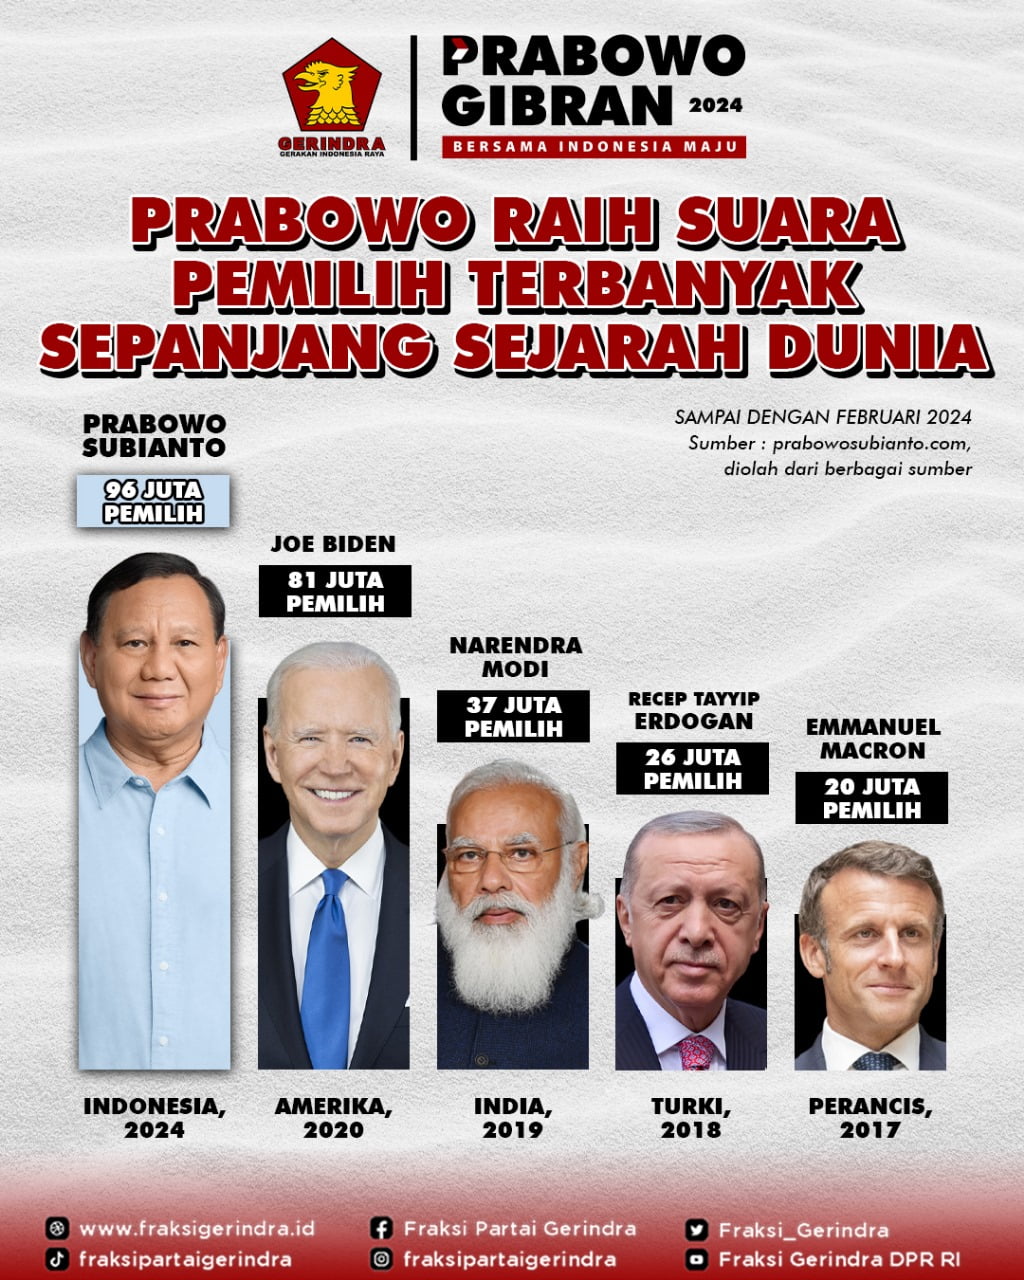 Mantul! Prabowo Subianto Jadi Pemimpin Dengan Suara Terbanyak, Raup Hingga 96 Juta Suara, Cetak Rekor Dunia! 